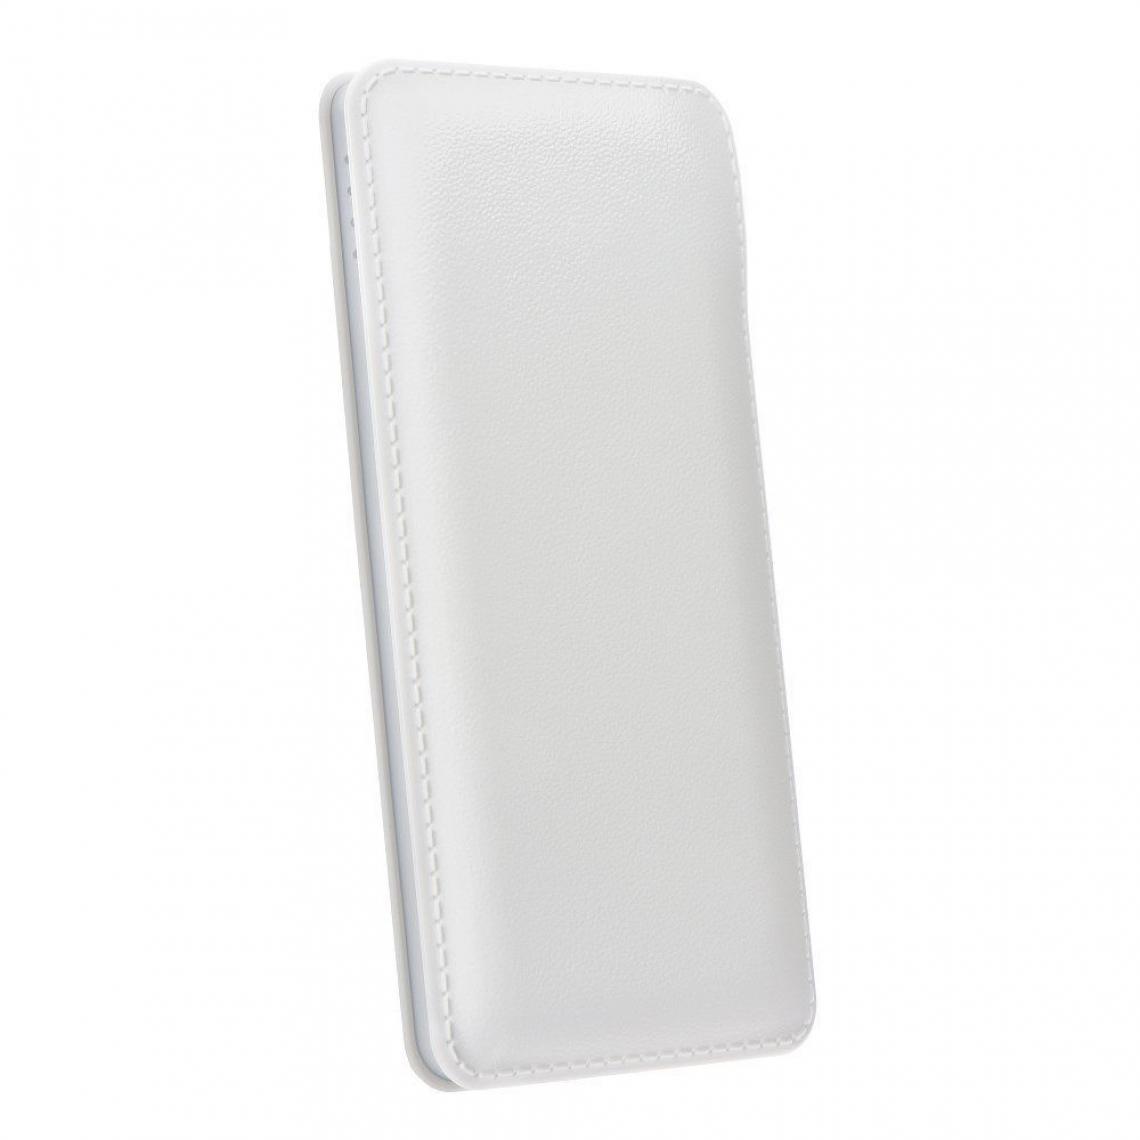 Ozzzo - Chargeur batterie externe 20000 mAh powerbank ozzzo blanc pour Samsung Galaxy M30s - Autres accessoires smartphone